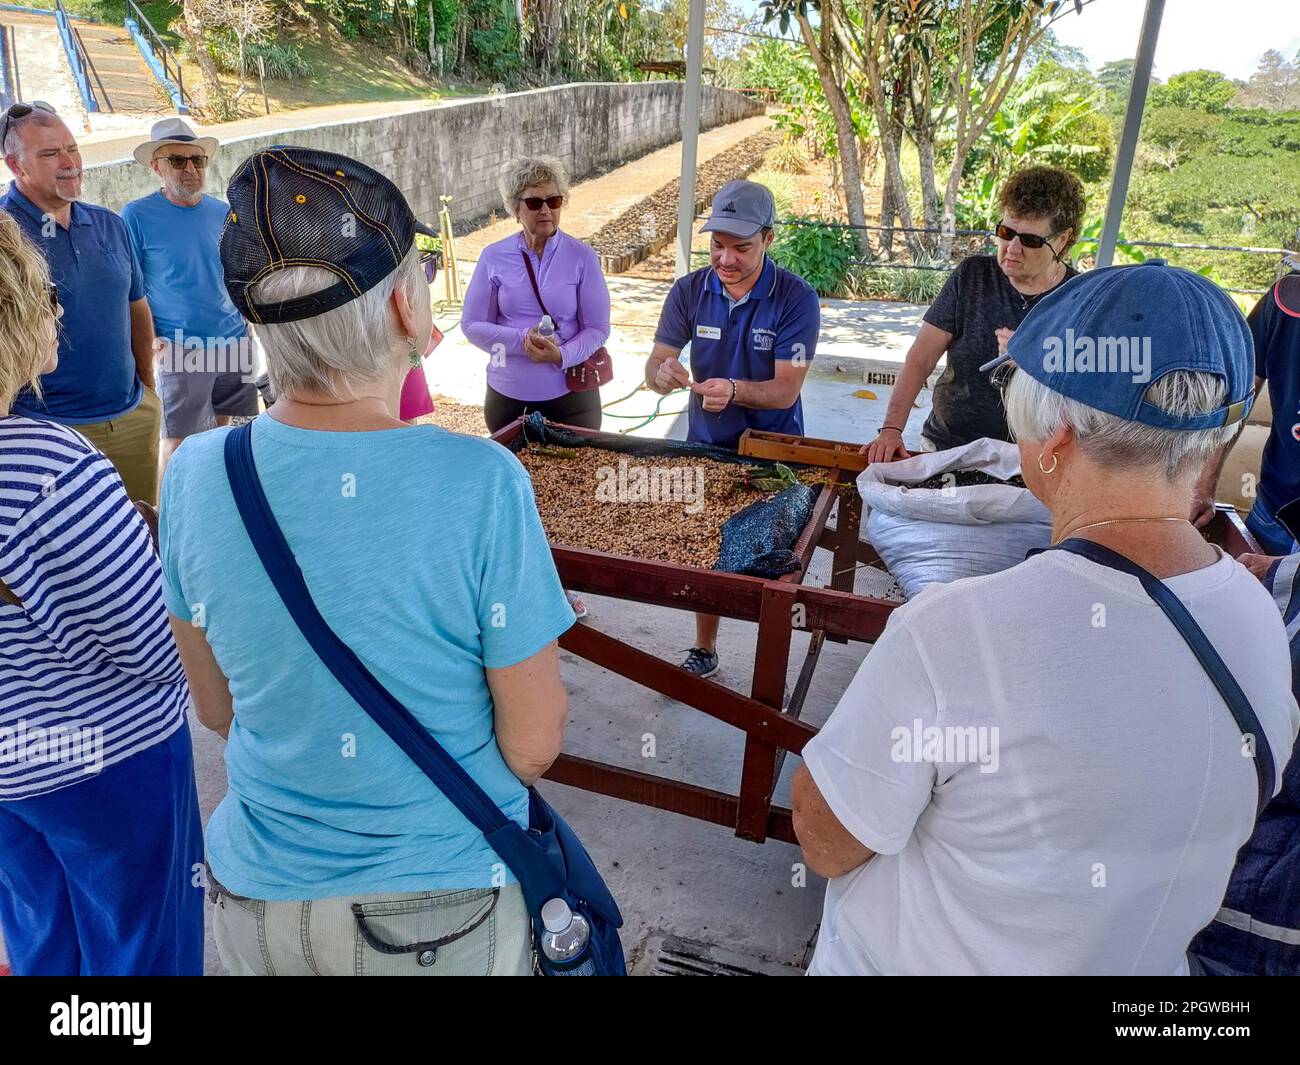 Naranjo, Costa Rica - Una guida turistica discute i chicchi di caffè con i turisti presso l'azienda agricola e l'impianto di lavorazione del caffè Espiryu Santo. Foto Stock